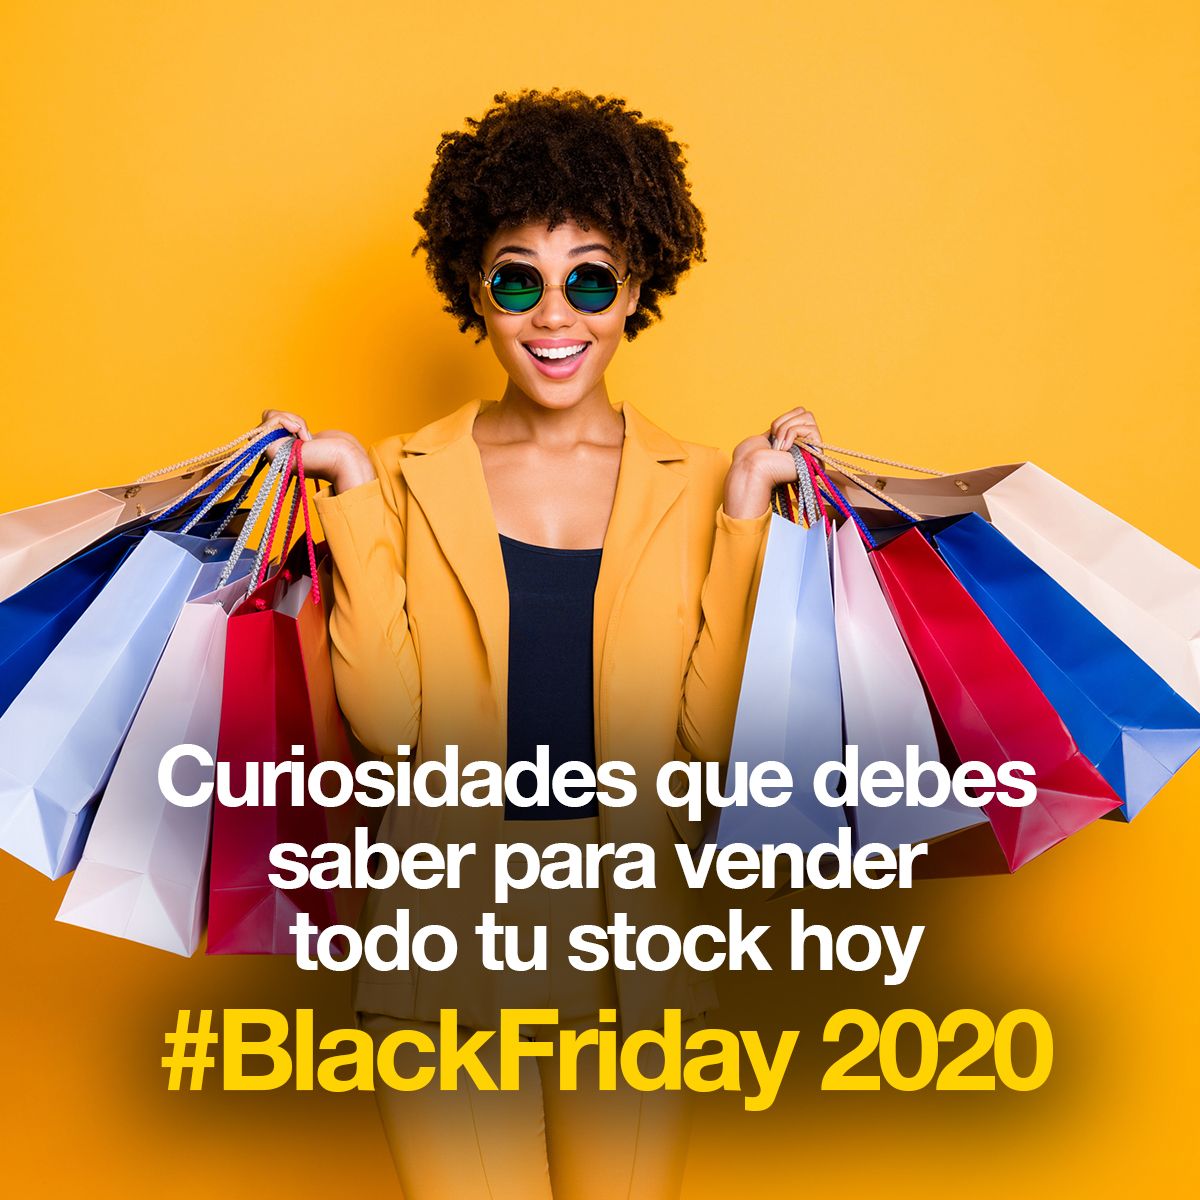 Curiosidades que debes saber para vender todo tu stock hoy #BlackFriday 2020